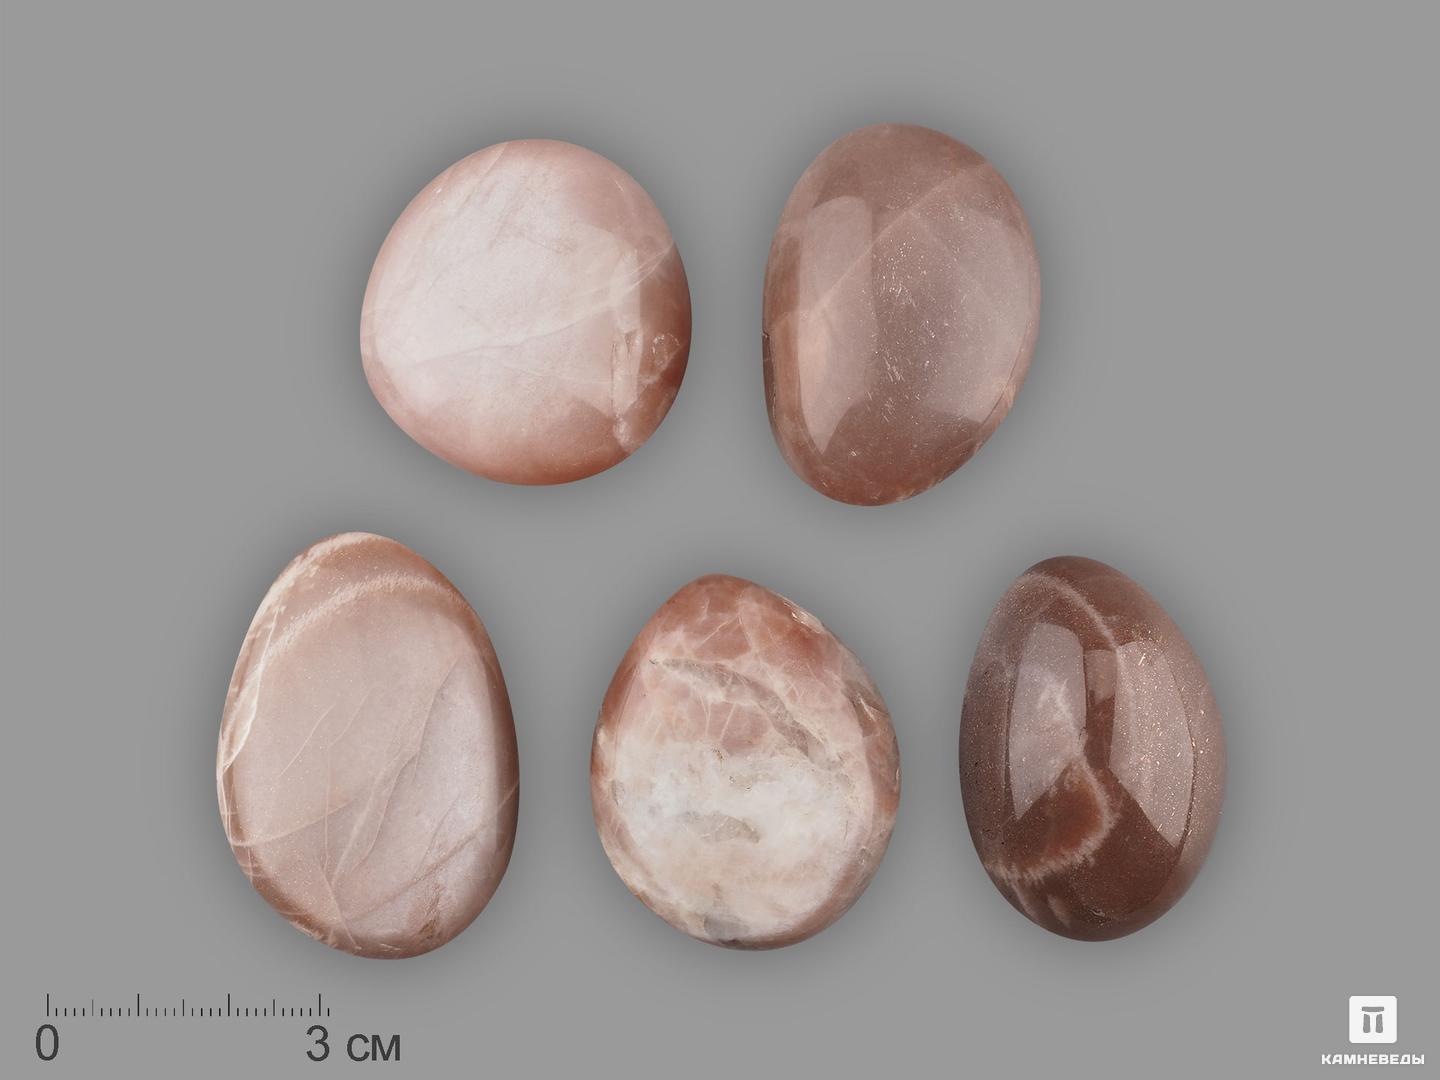 Лунный камень (адуляр) с эффектом солнечного камня, крупная галтовка 3,5-5 см (40-45 г), 19684, фото 1